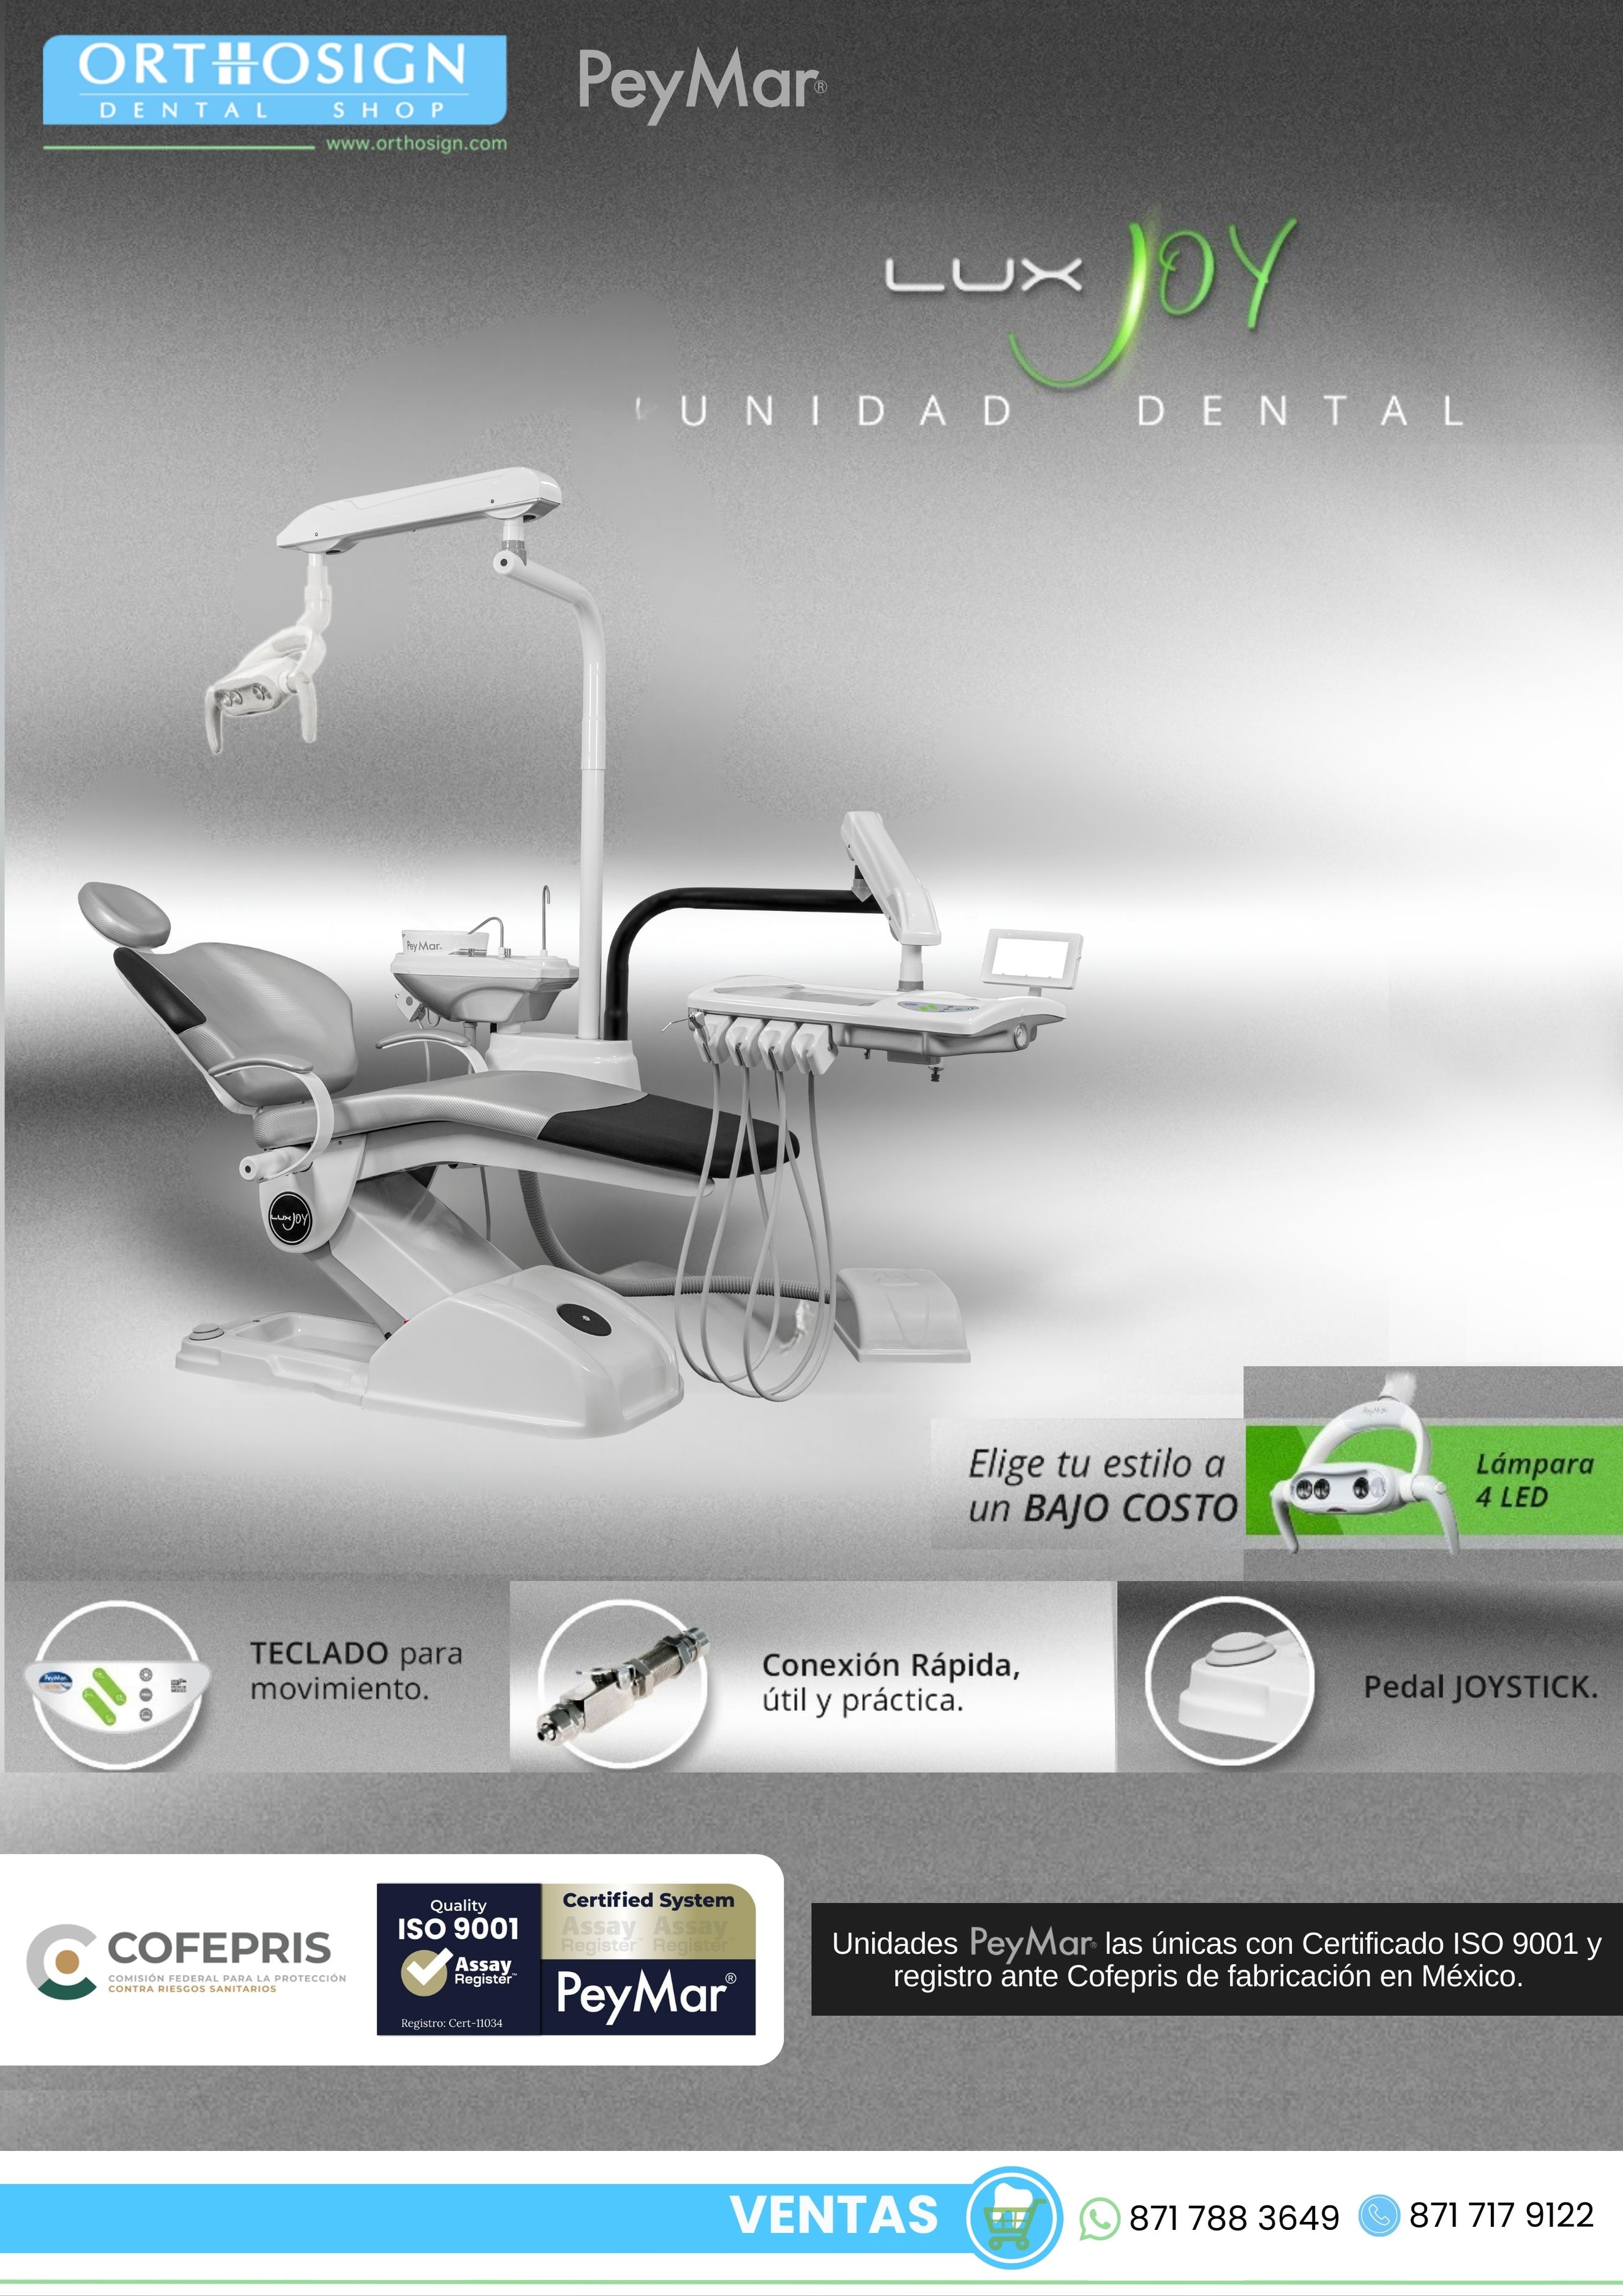 Lux Joy Unidad Dental Peymar Orthosign - Catálogo 1